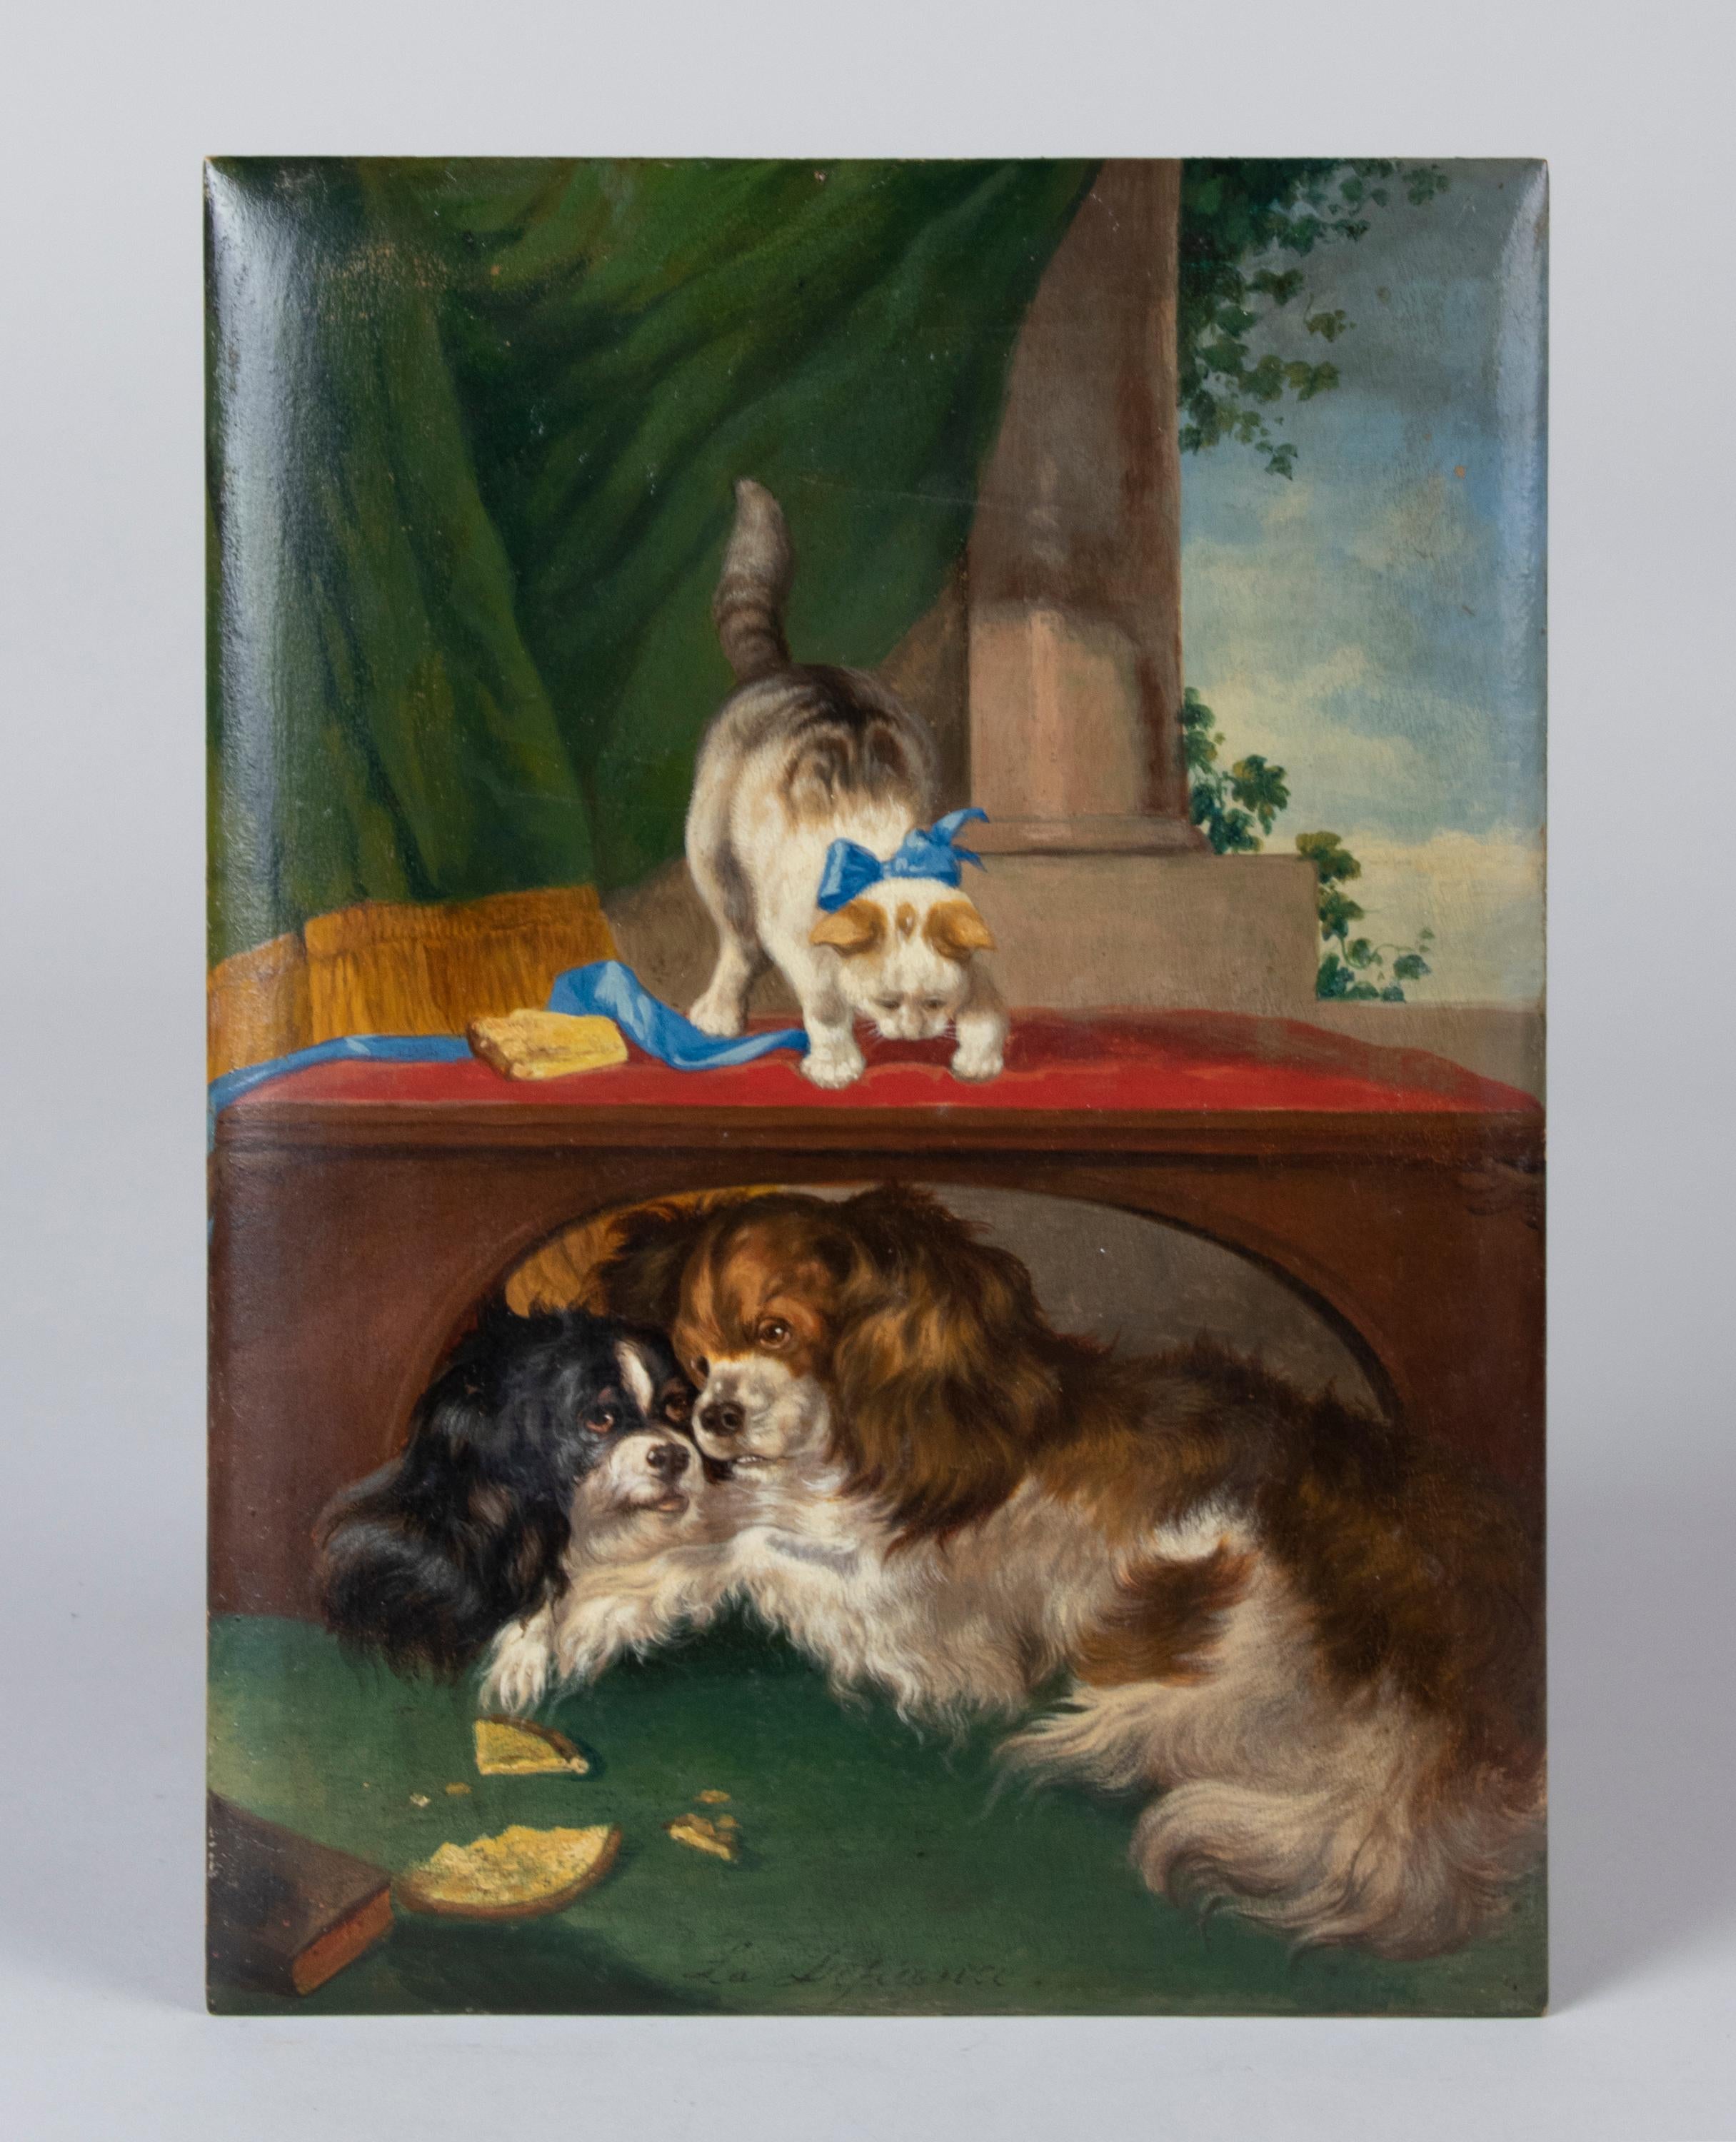 Schönes antikes Gemälde, Öl auf Tafel, das zwei King Charles Cavalier Spaniels und eine Katze zeigt.
Es ist ein schönes Gemälde, nicht zu groß, mit schönen leuchtenden Farben. Unten steht der Titel 